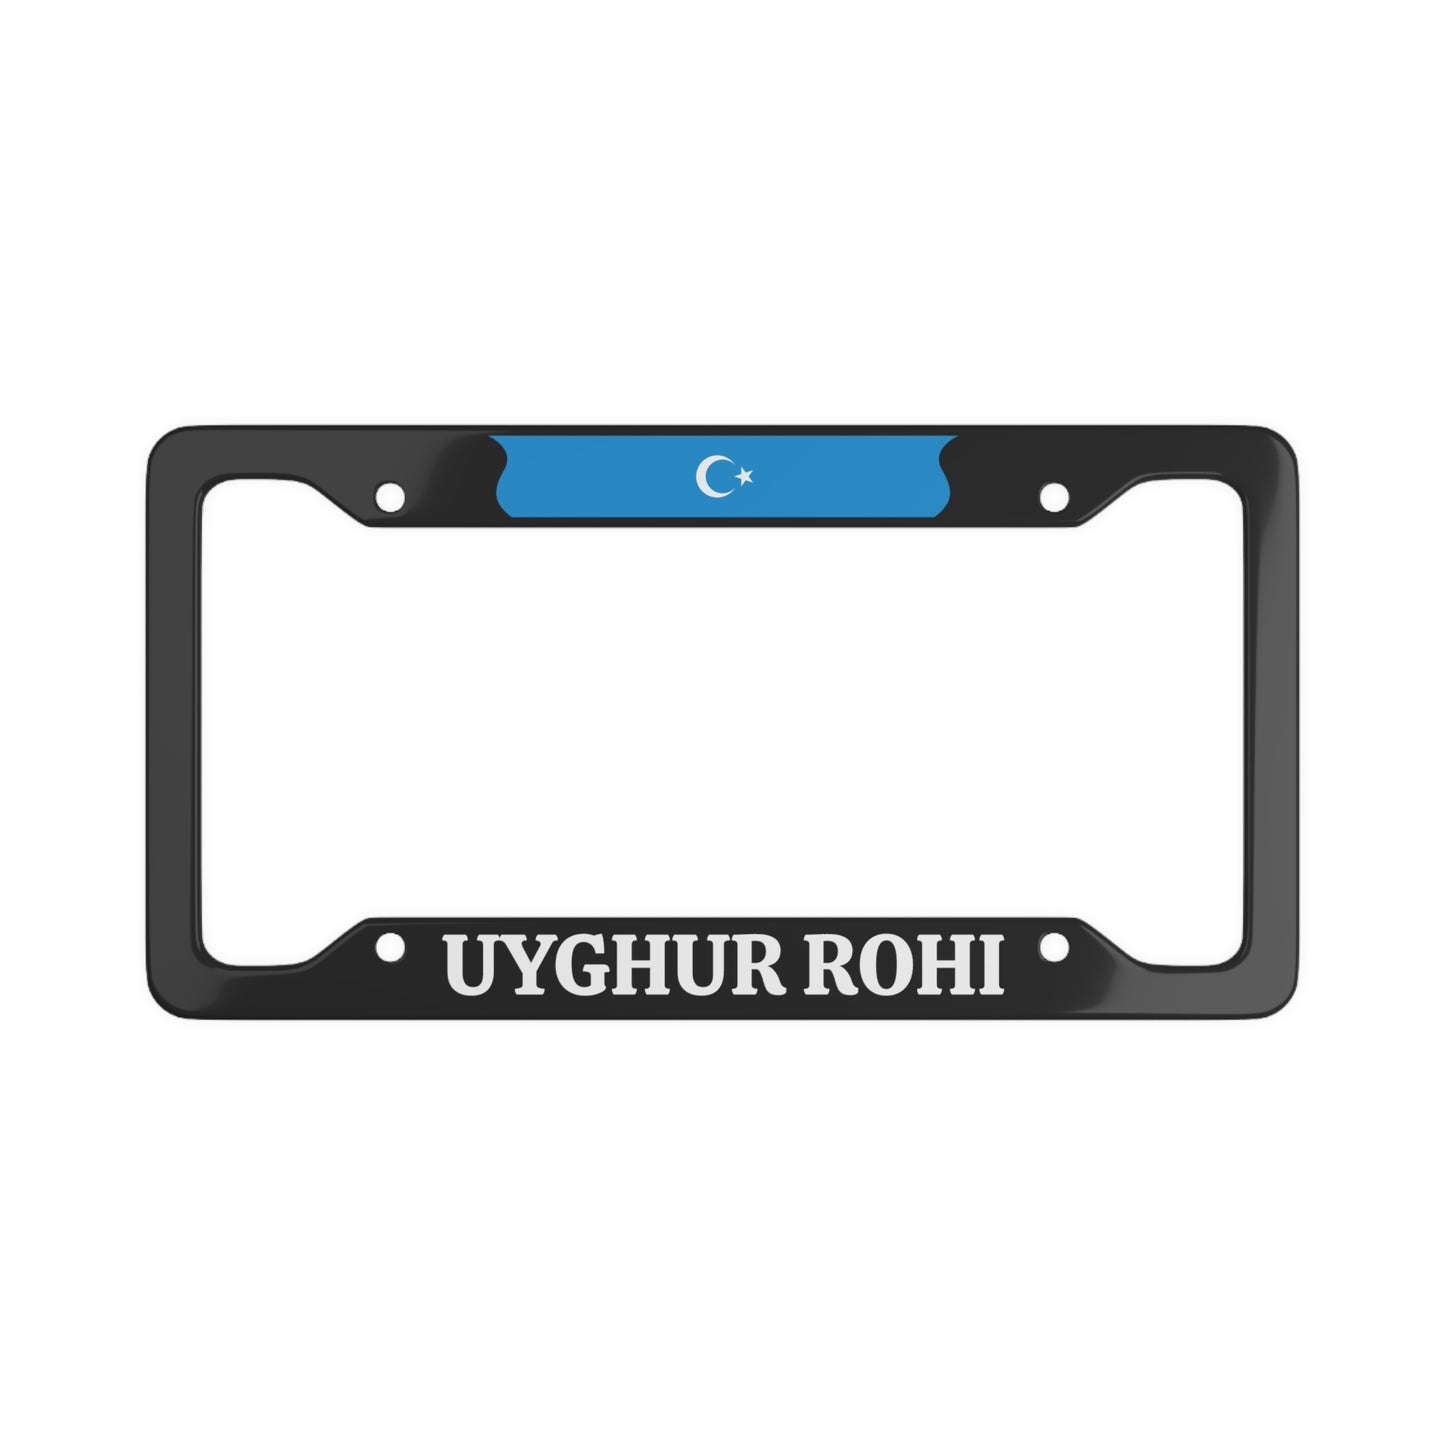 Uyghur Rohi License Plate Frame